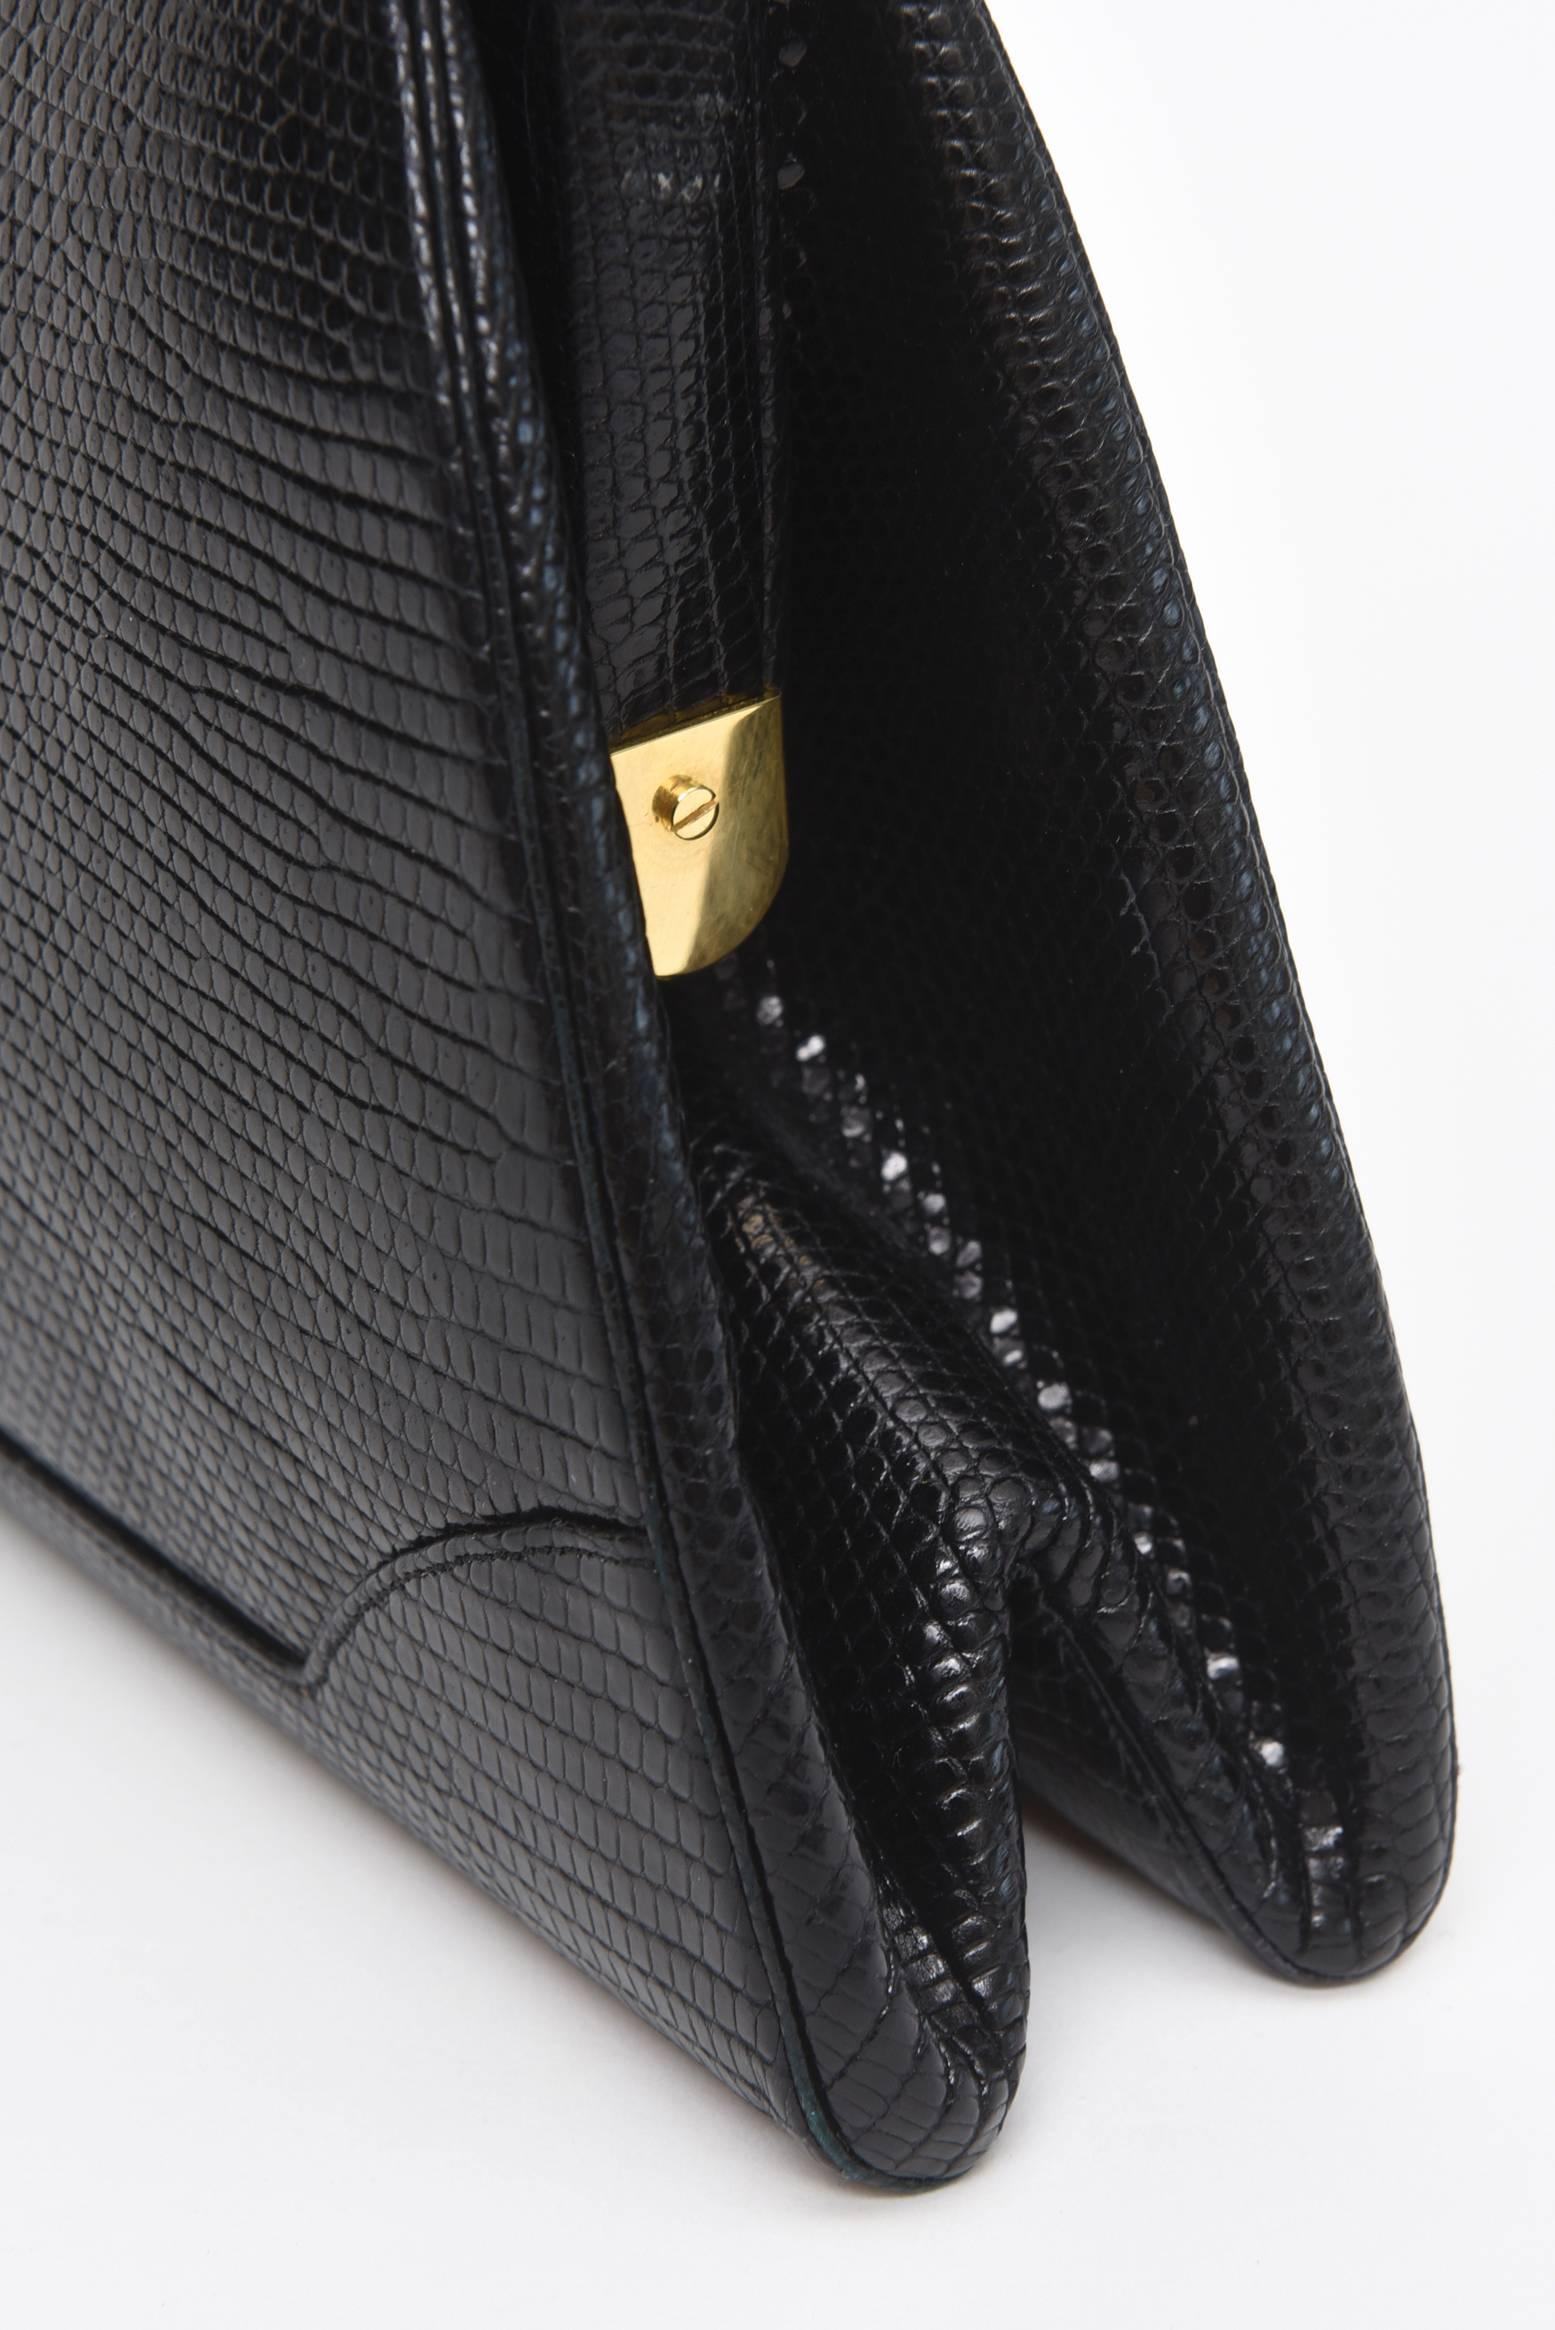 Judith Leiber Black Lizard Kelly Handbag Vintage 1